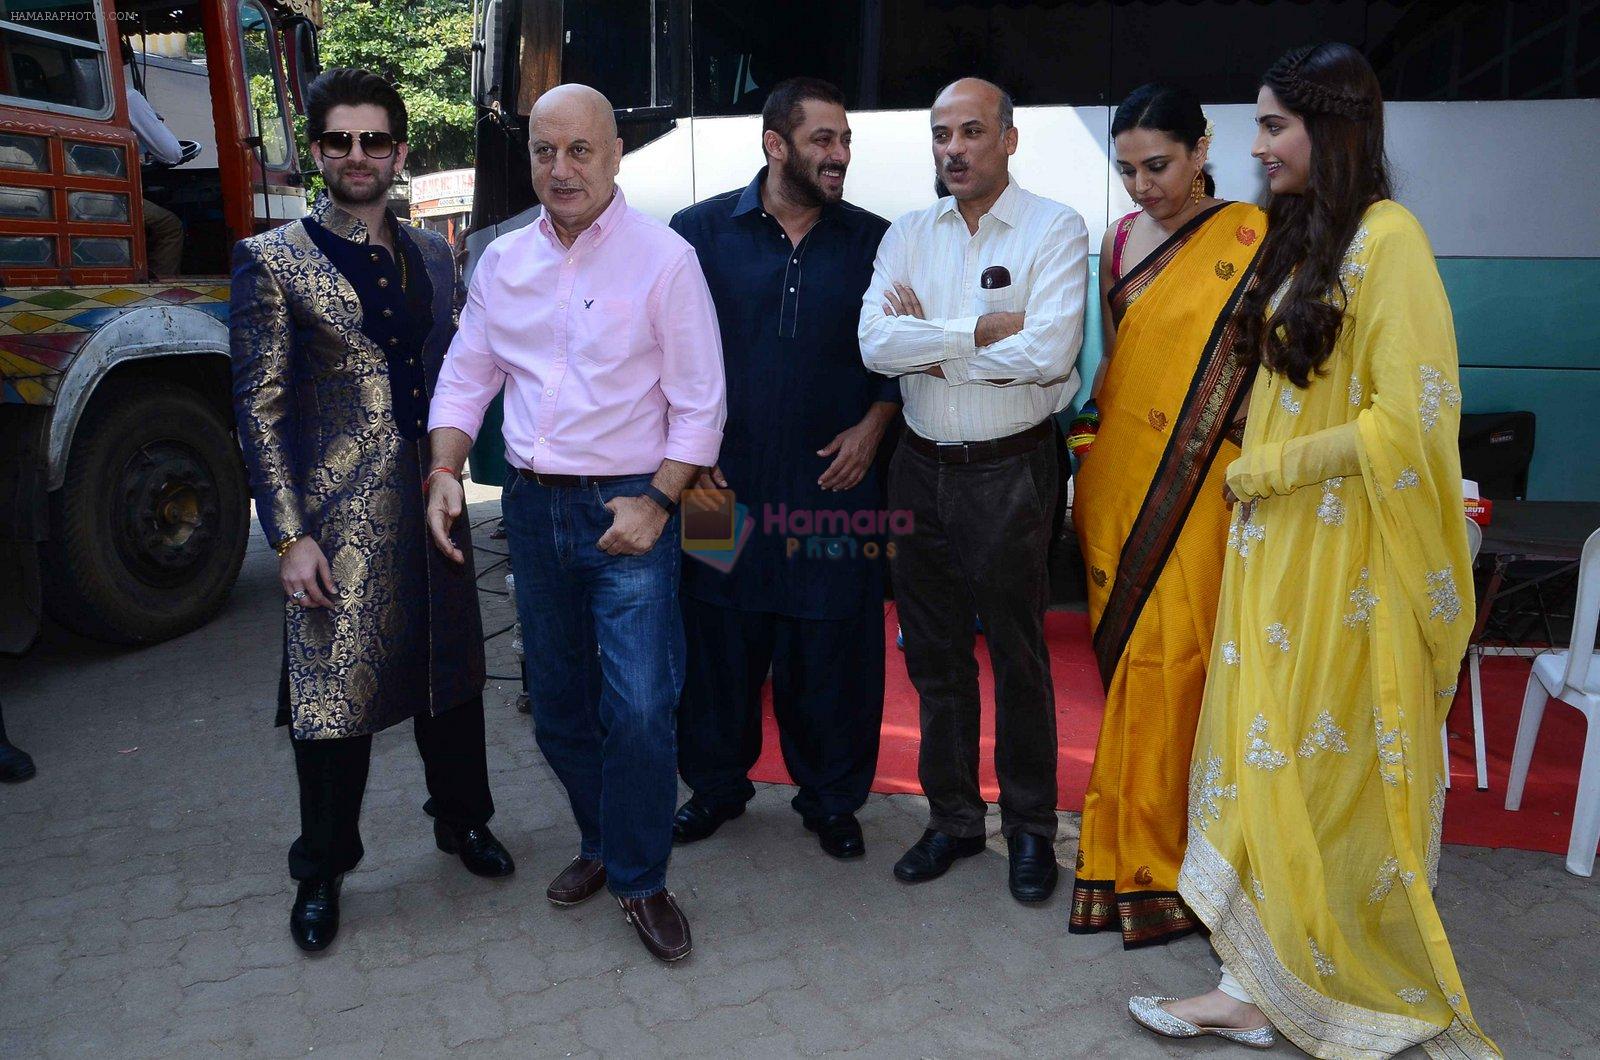 Neil Mukesh, Anupam Kher, Salman Khan, Sooraj Barjatya, Swara Bhaskar, Sonam Kapoor at prem ratan dhan payo dharavi Band on 11th Nov 2015